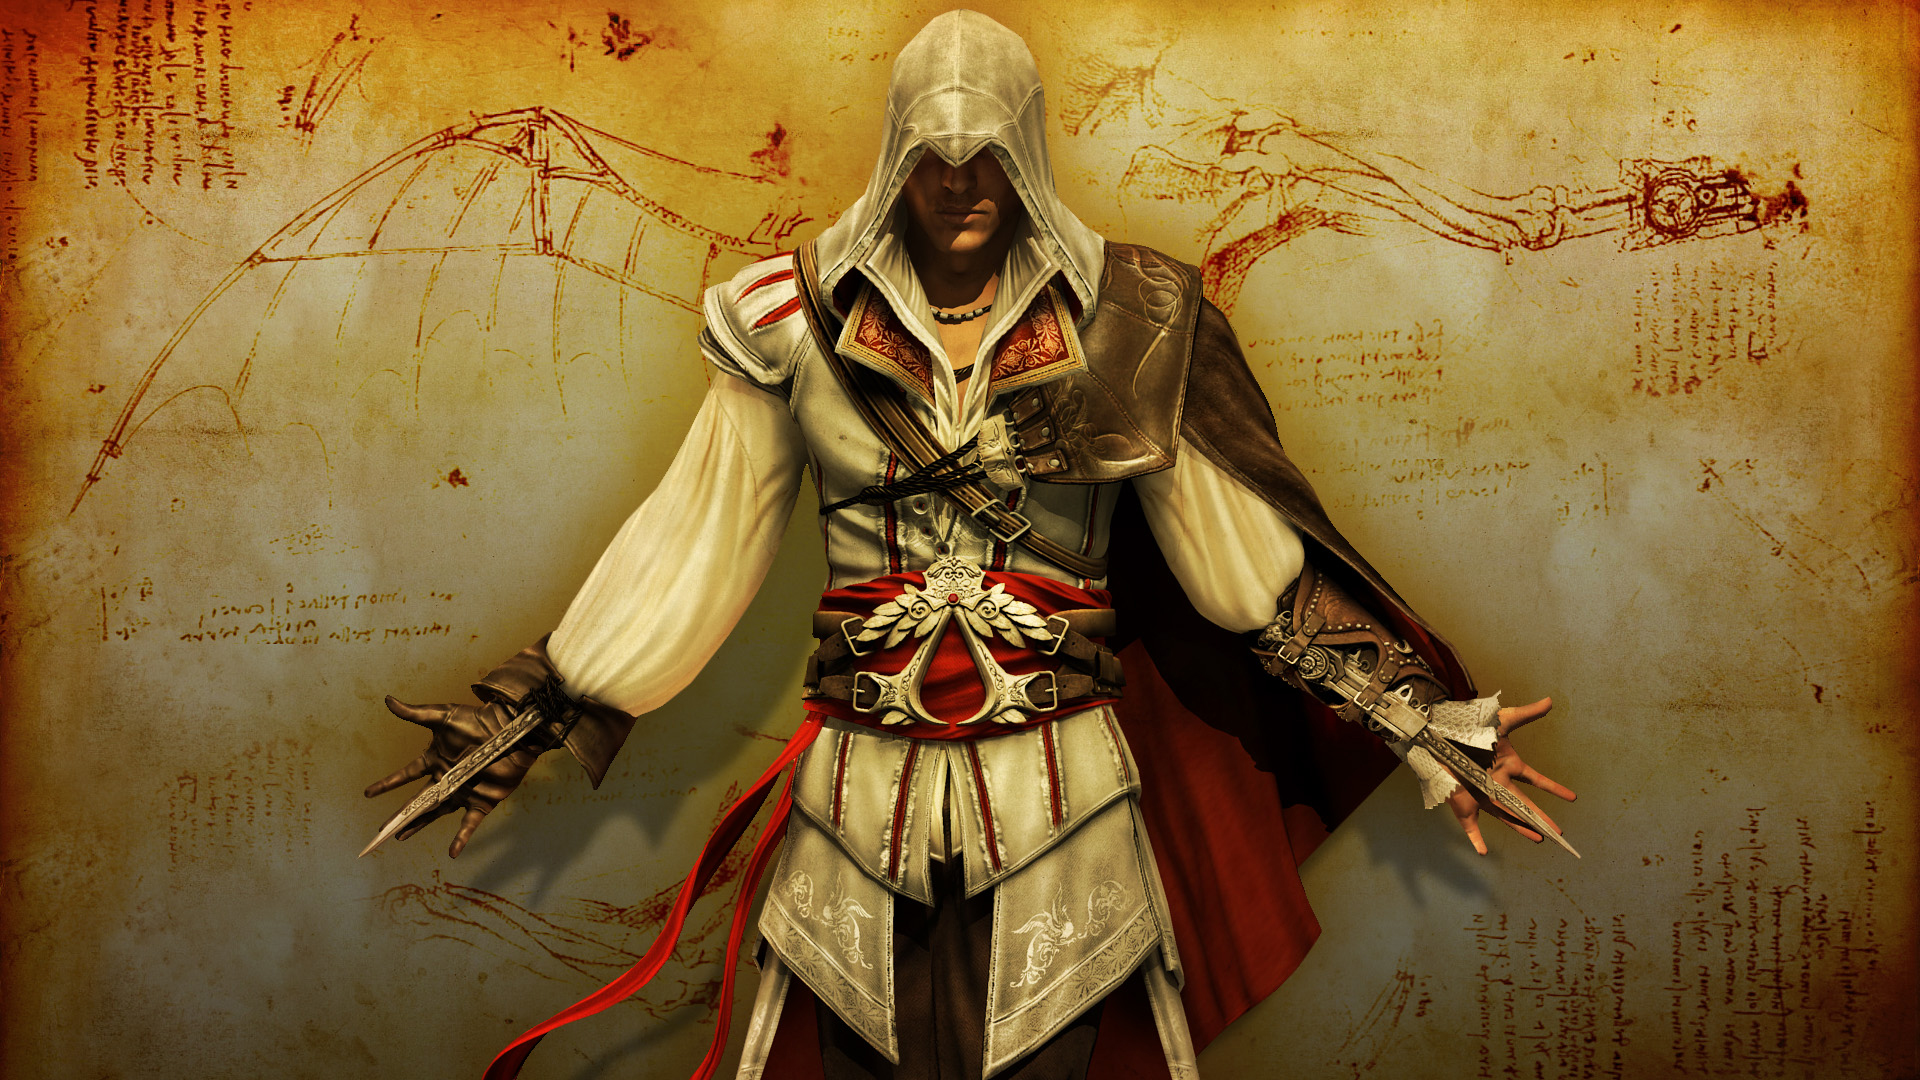 Assassin S Creed Wallpaper